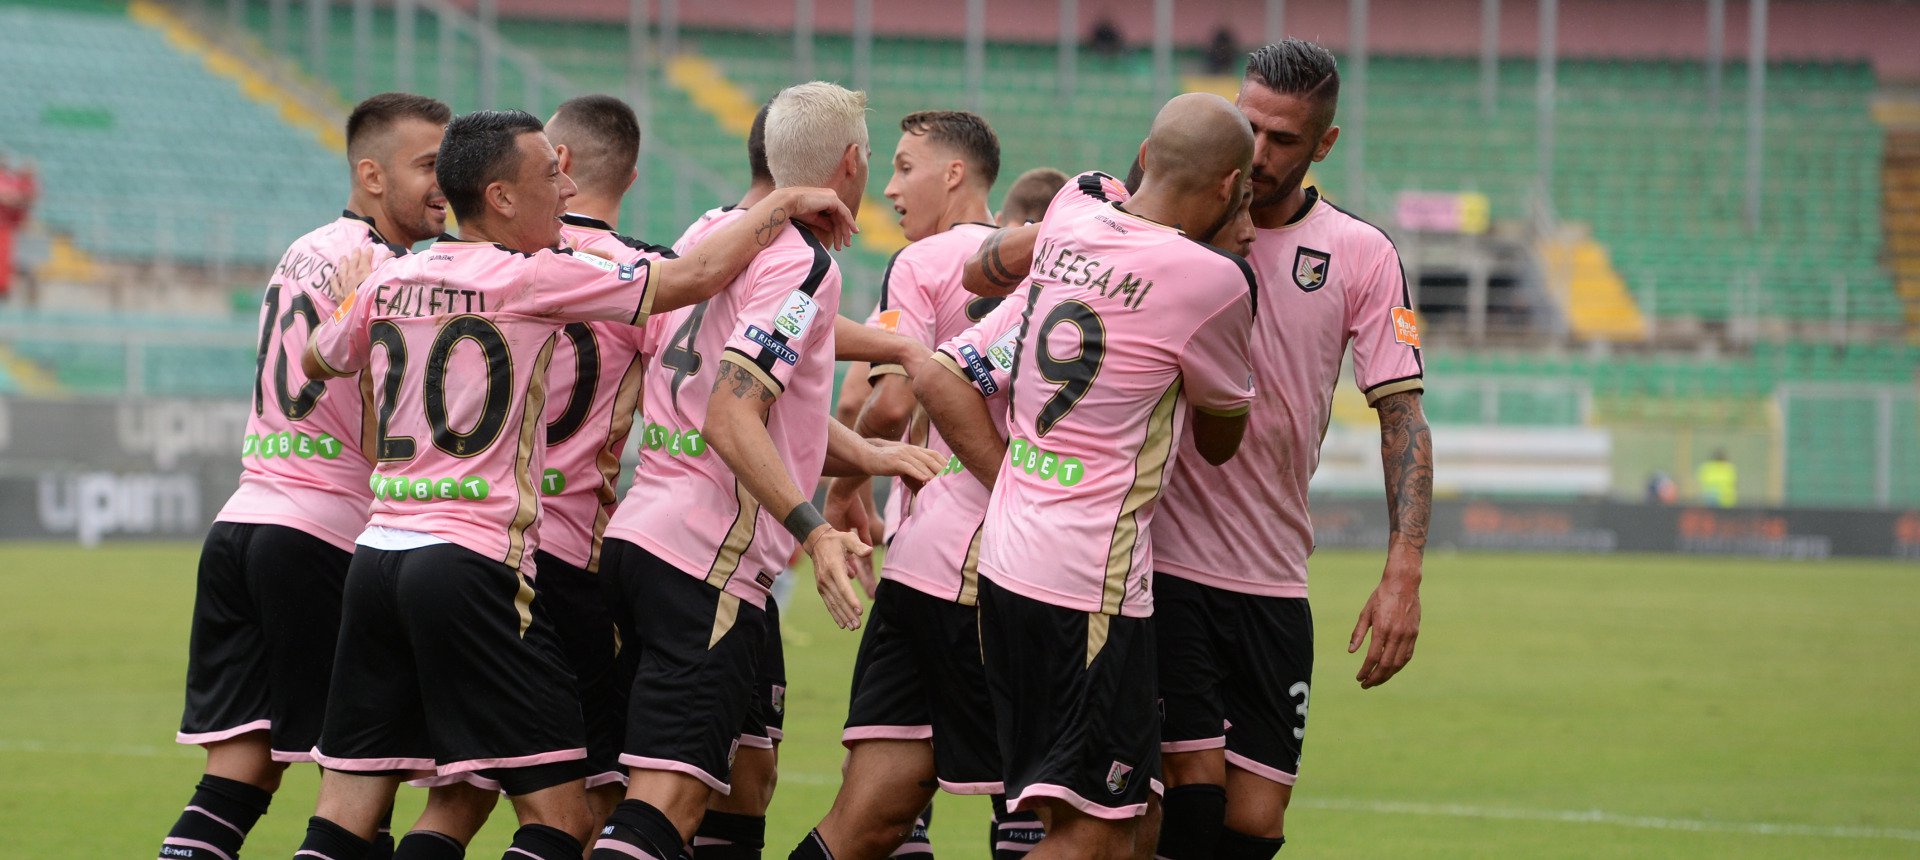 Palermo Calcio, mese decisivo per il futuro - BlogSicilia - Ultime